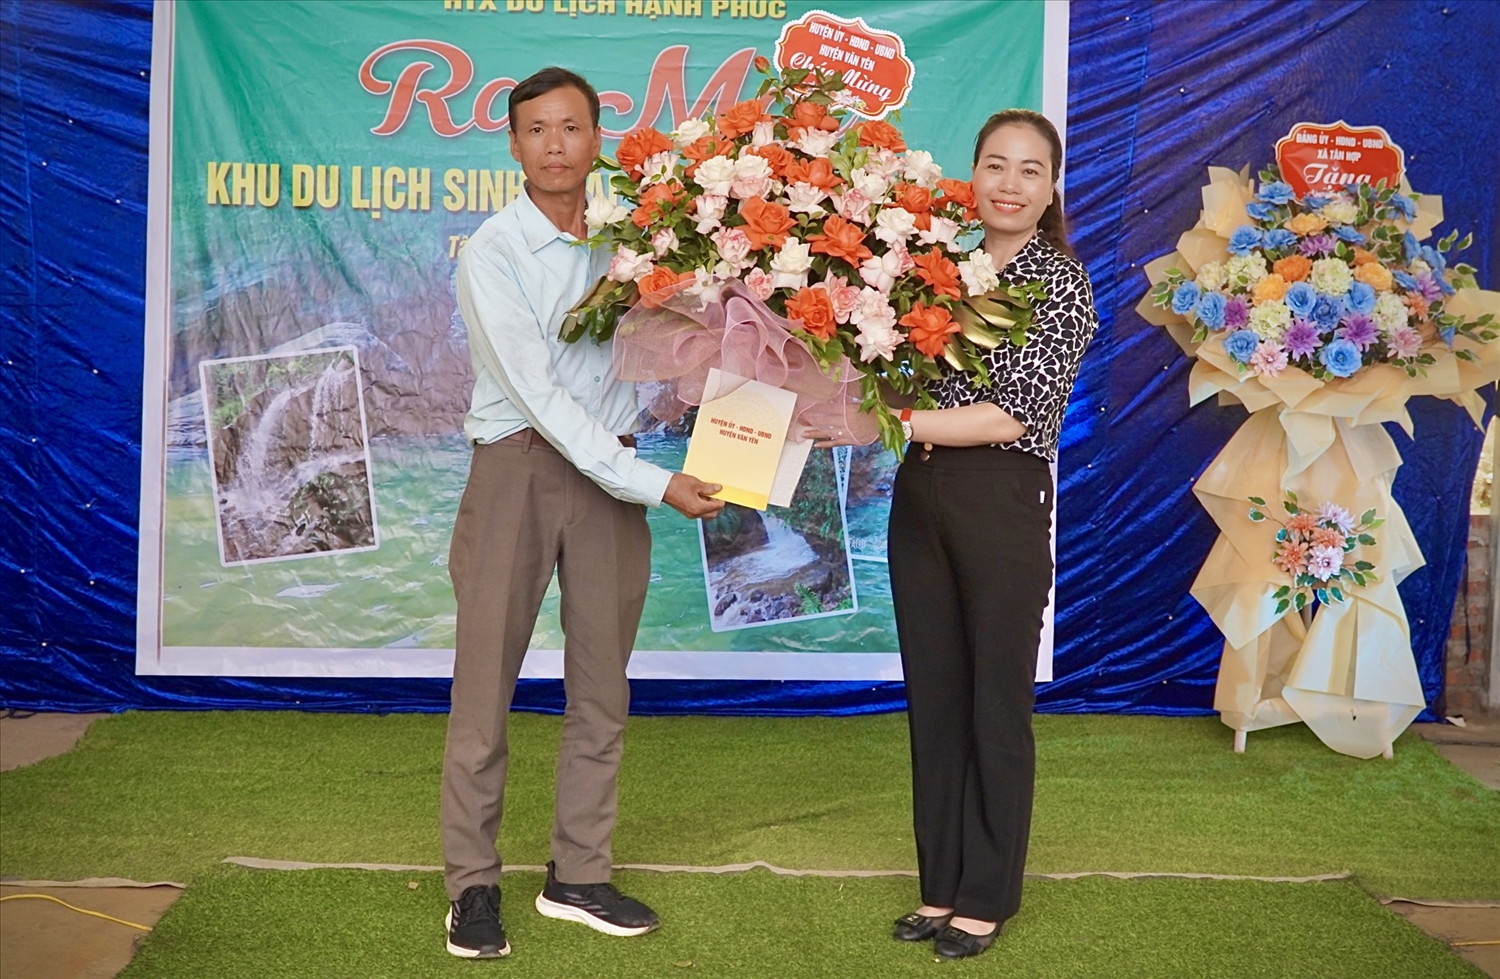 Phó chủ tịch UBND huyện Văn Yên Lã Thị Liền tặng hoa chúc mừng HTX Du lịch Hạnh Phúc nhân dịp ra mắt.